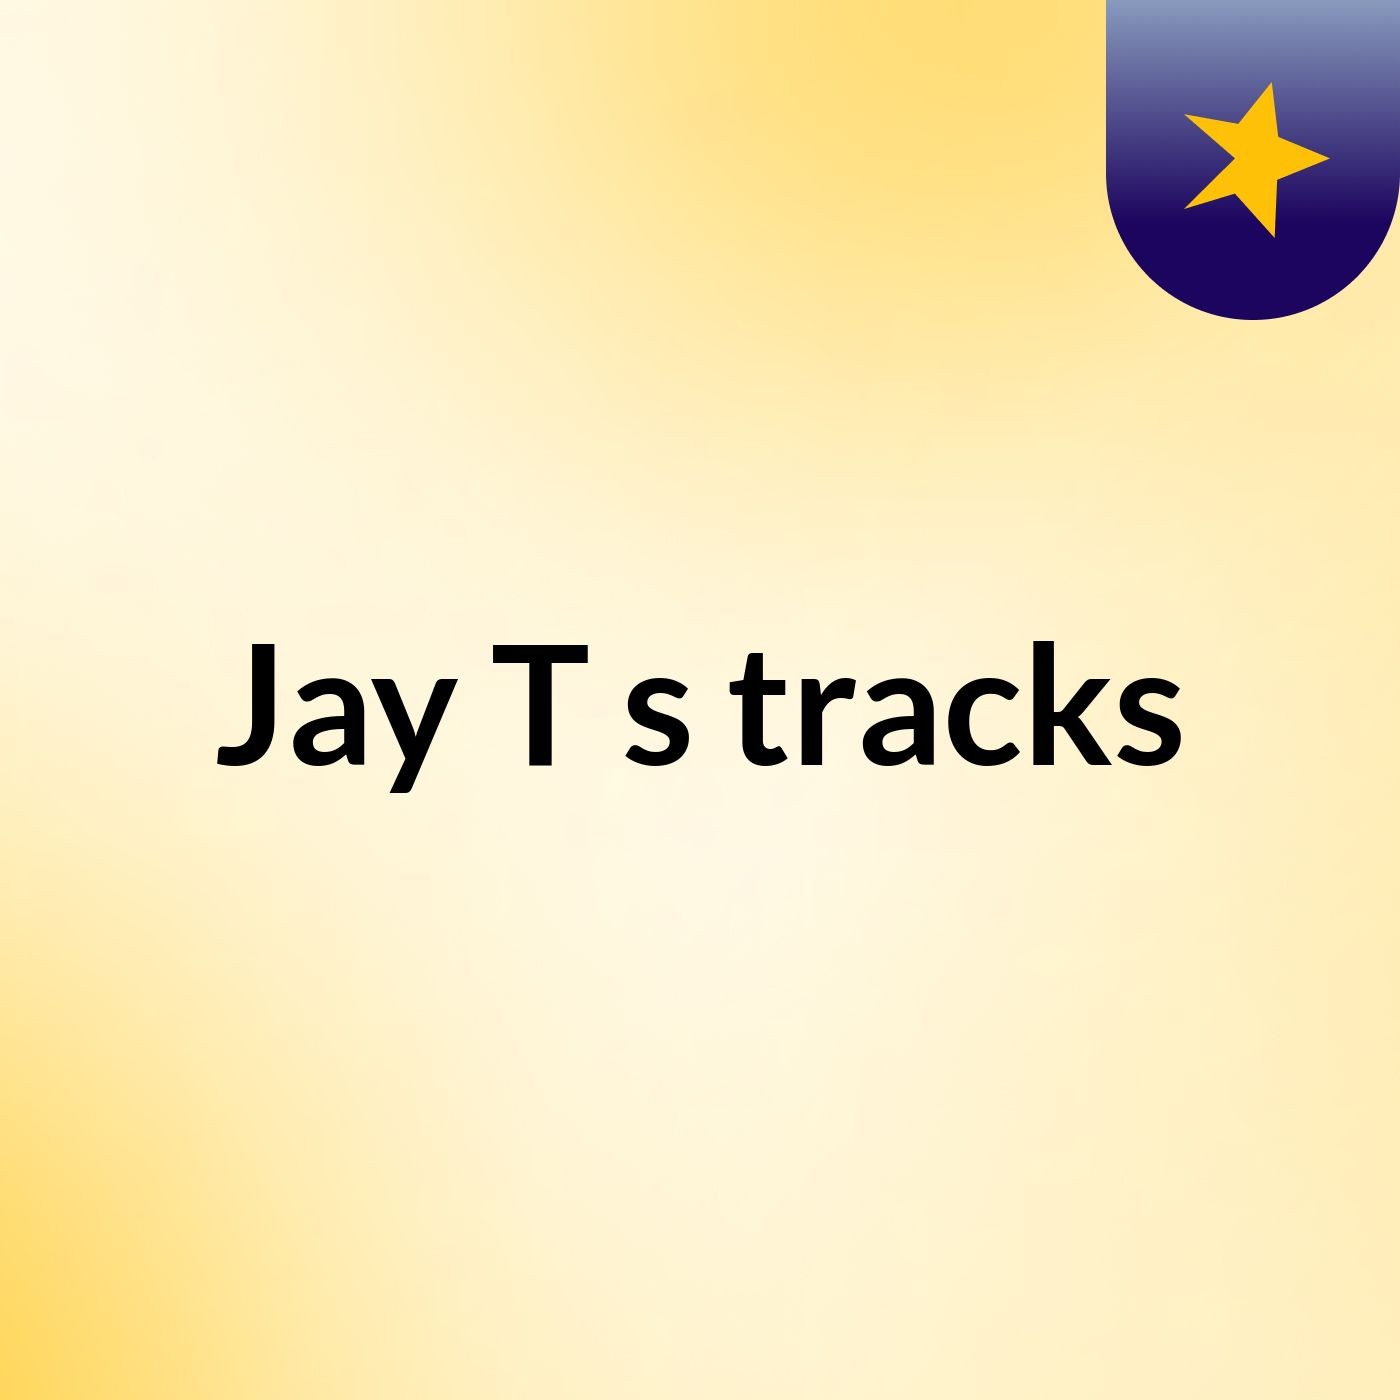 Jay T's tracks